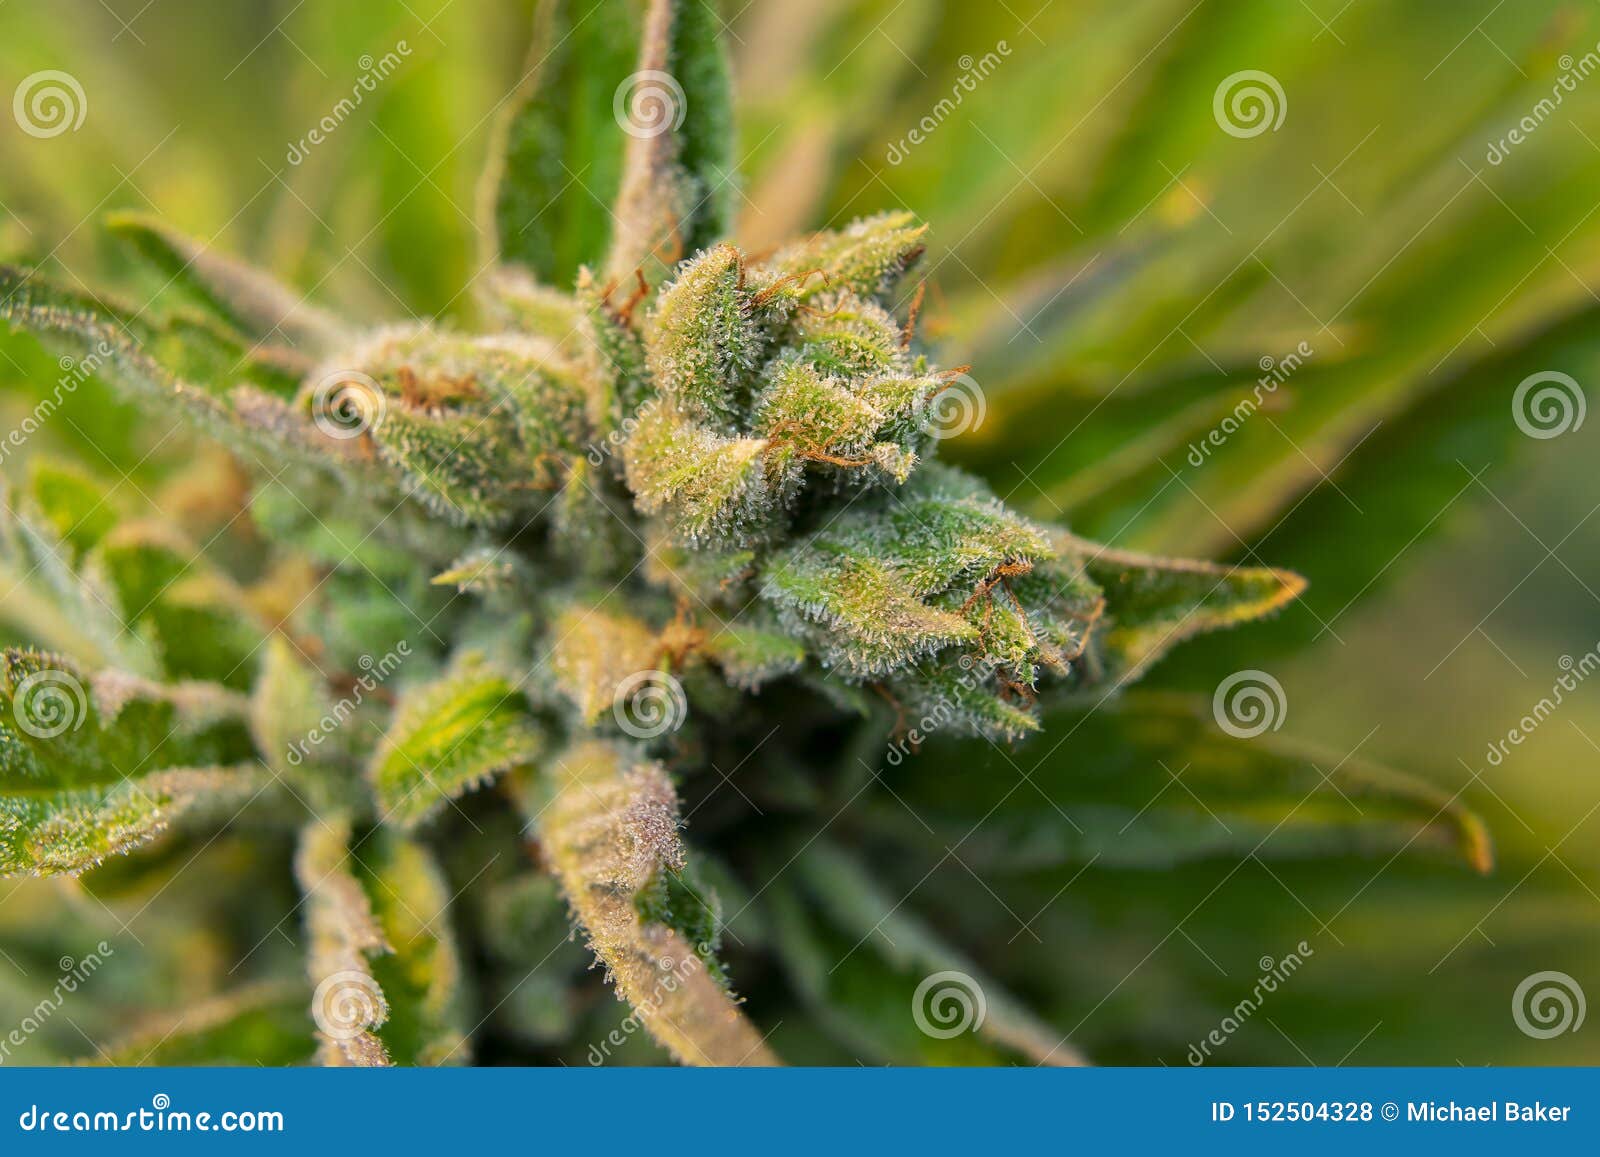 Кристаллы на марихуане фото как сменить айпи в тор браузере вход на гидру